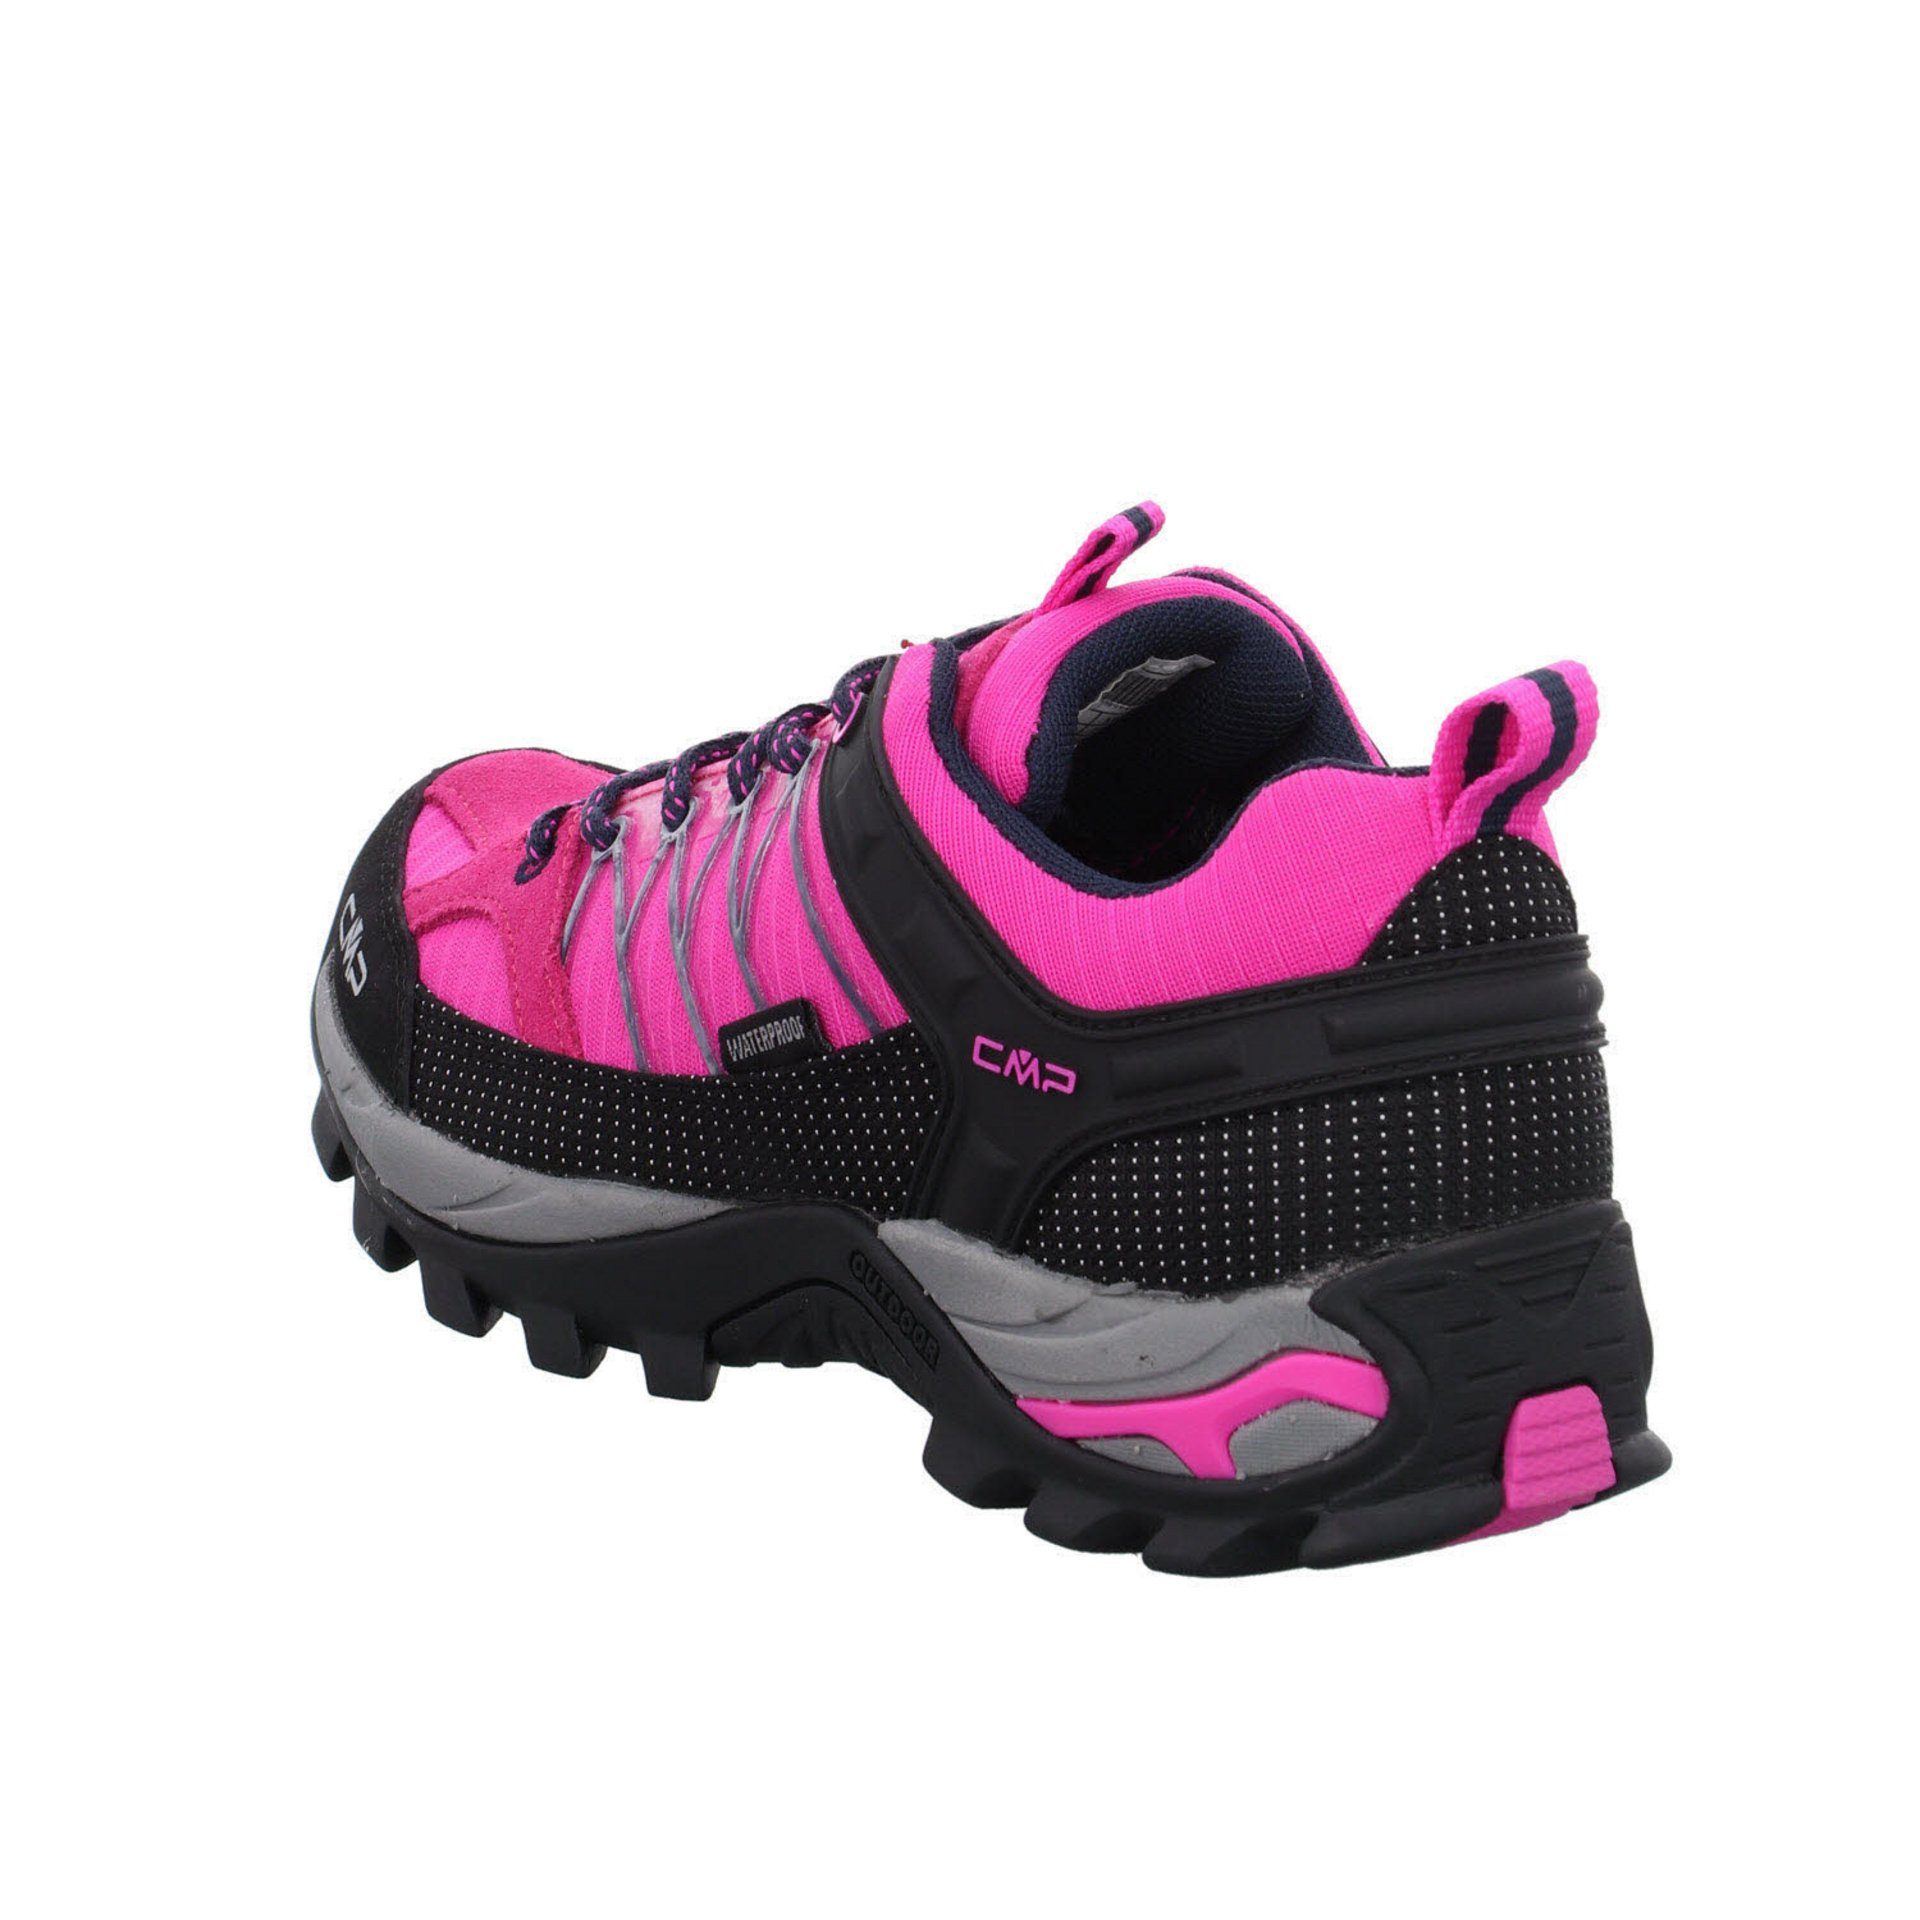 Leder-/Textilkombination Low CMP Outdoorschuh pink Schuhe (03201886) Outdoor Rigel Damen fluo-b.blue Outdoorschuh